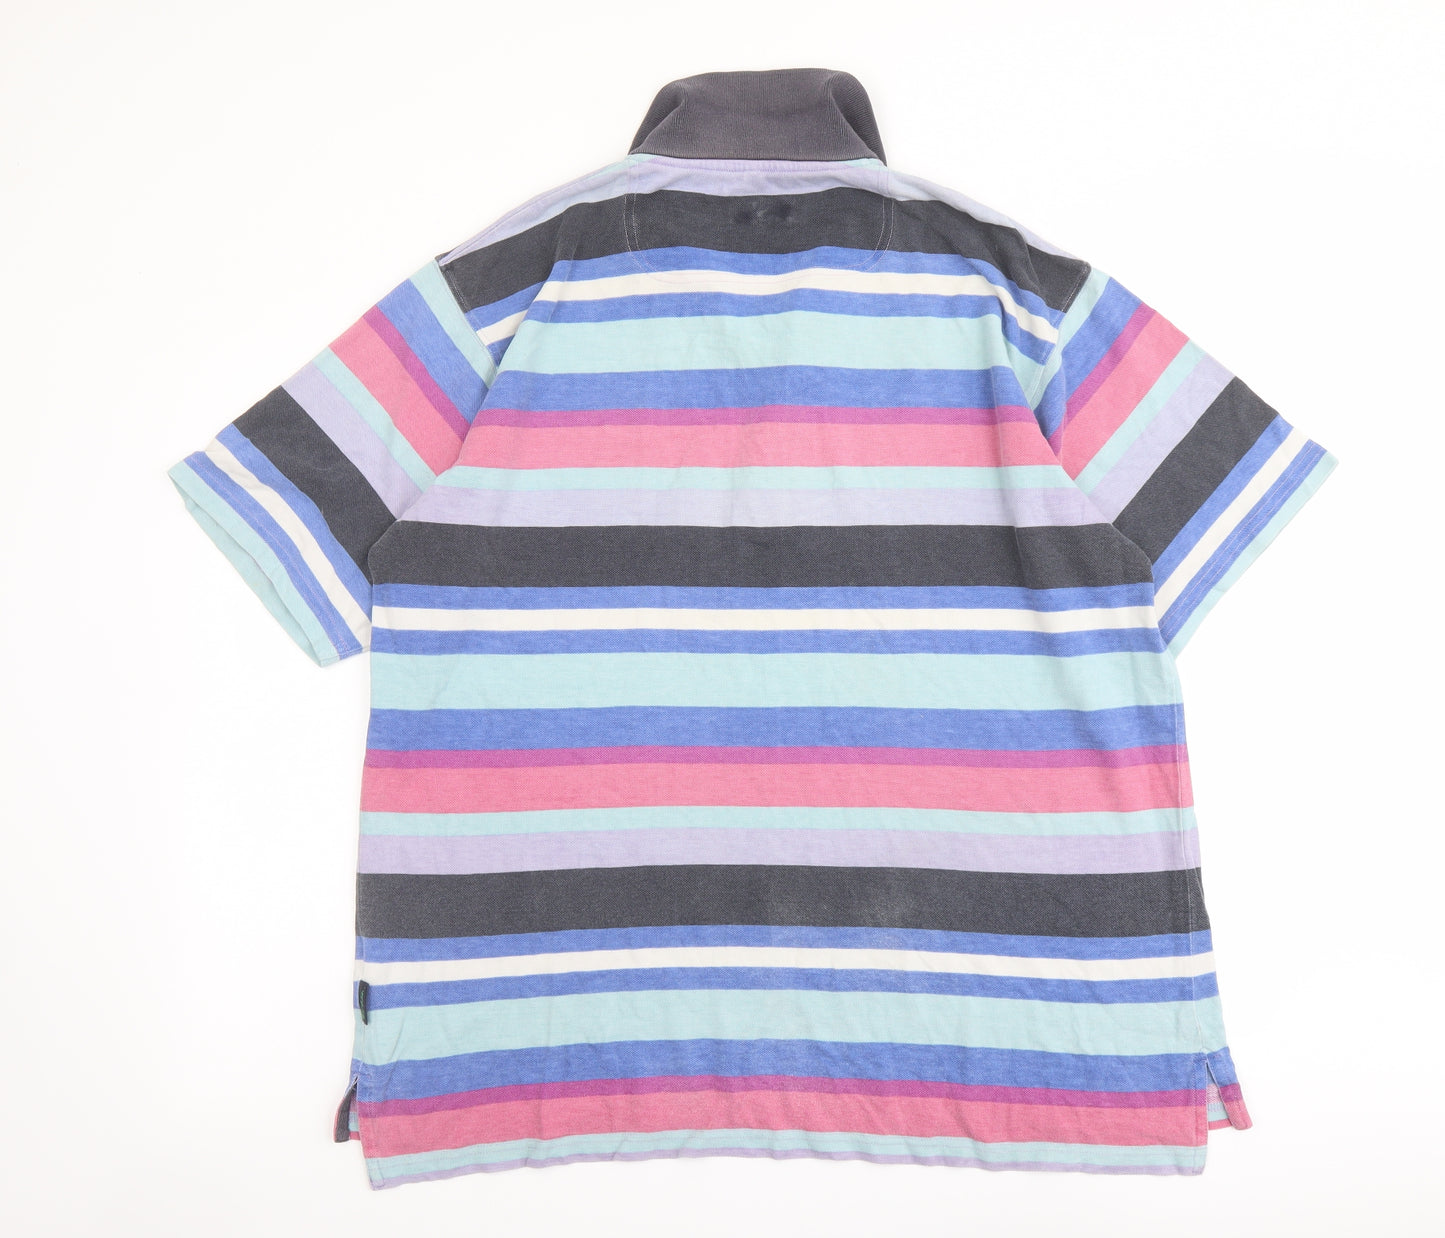 Boden Mens Multicoloured Striped Cotton Polo Size L Collared Button